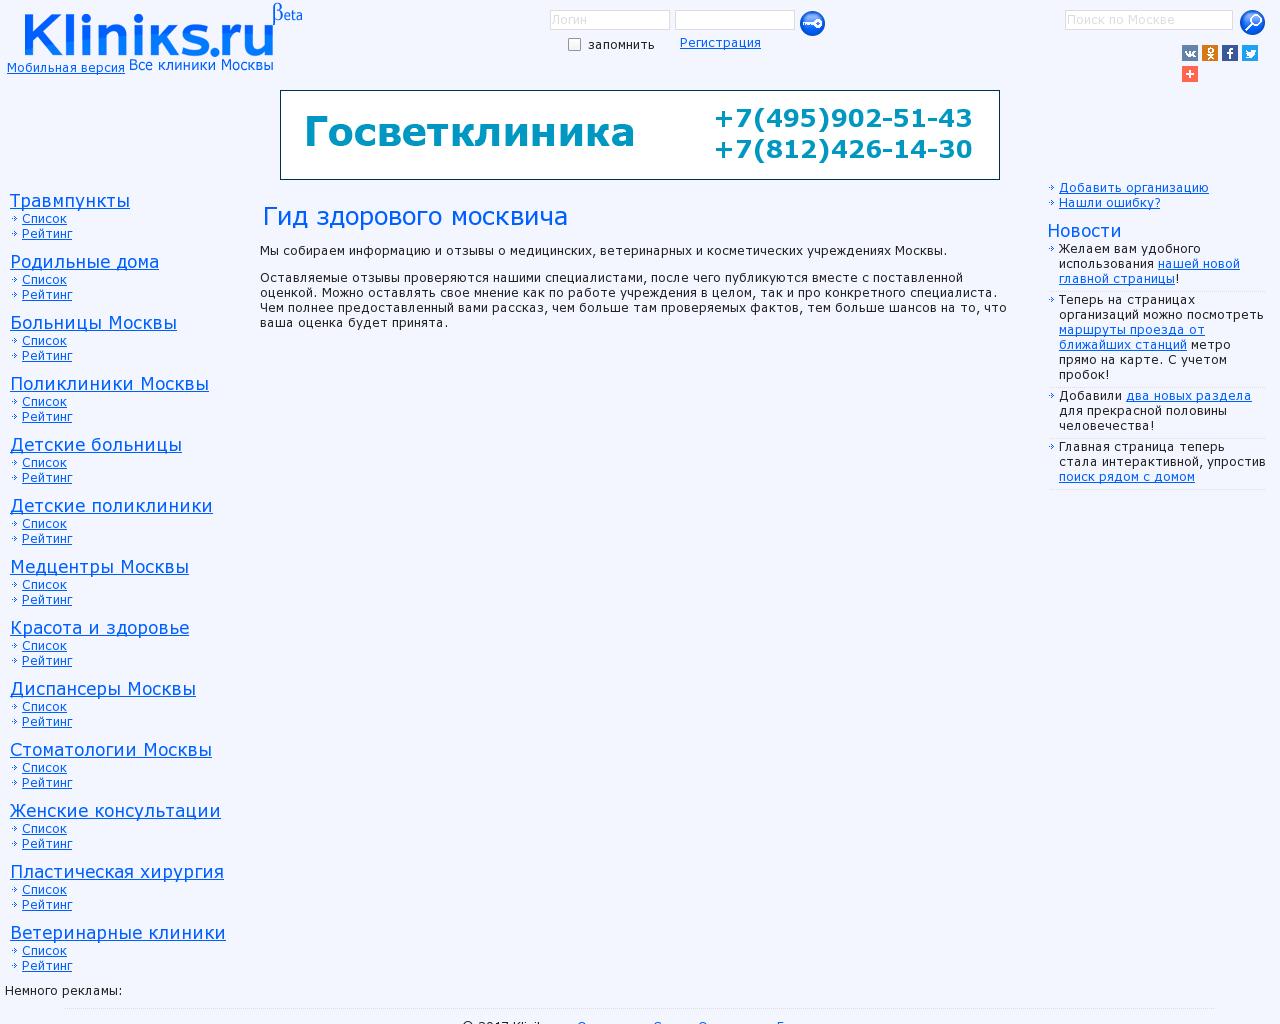 Изображение сайта kliniks.ru в разрешении 1280x1024